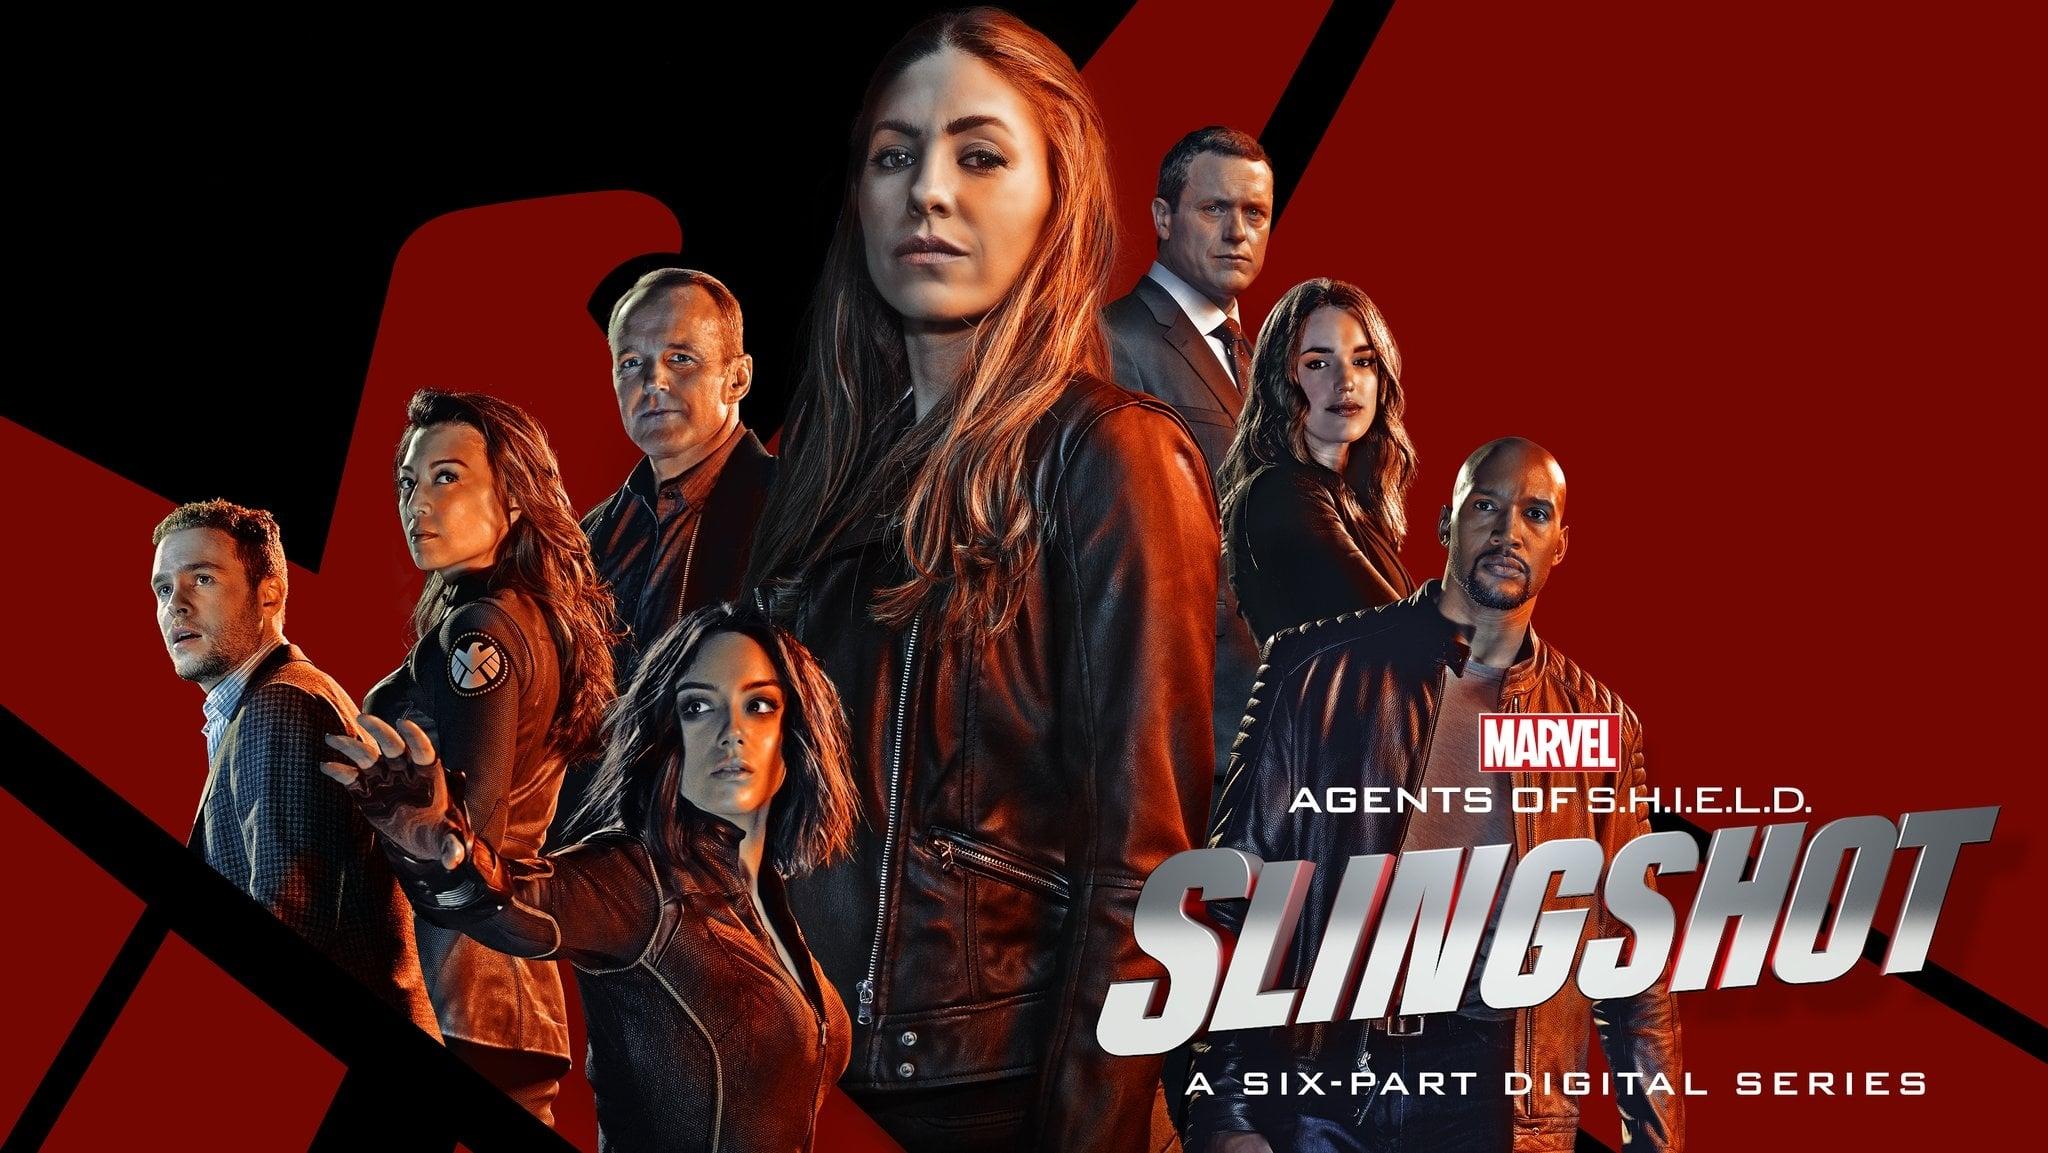 Marvel's Agents of S.H.I.E.L.D.: Slingshot backdrop